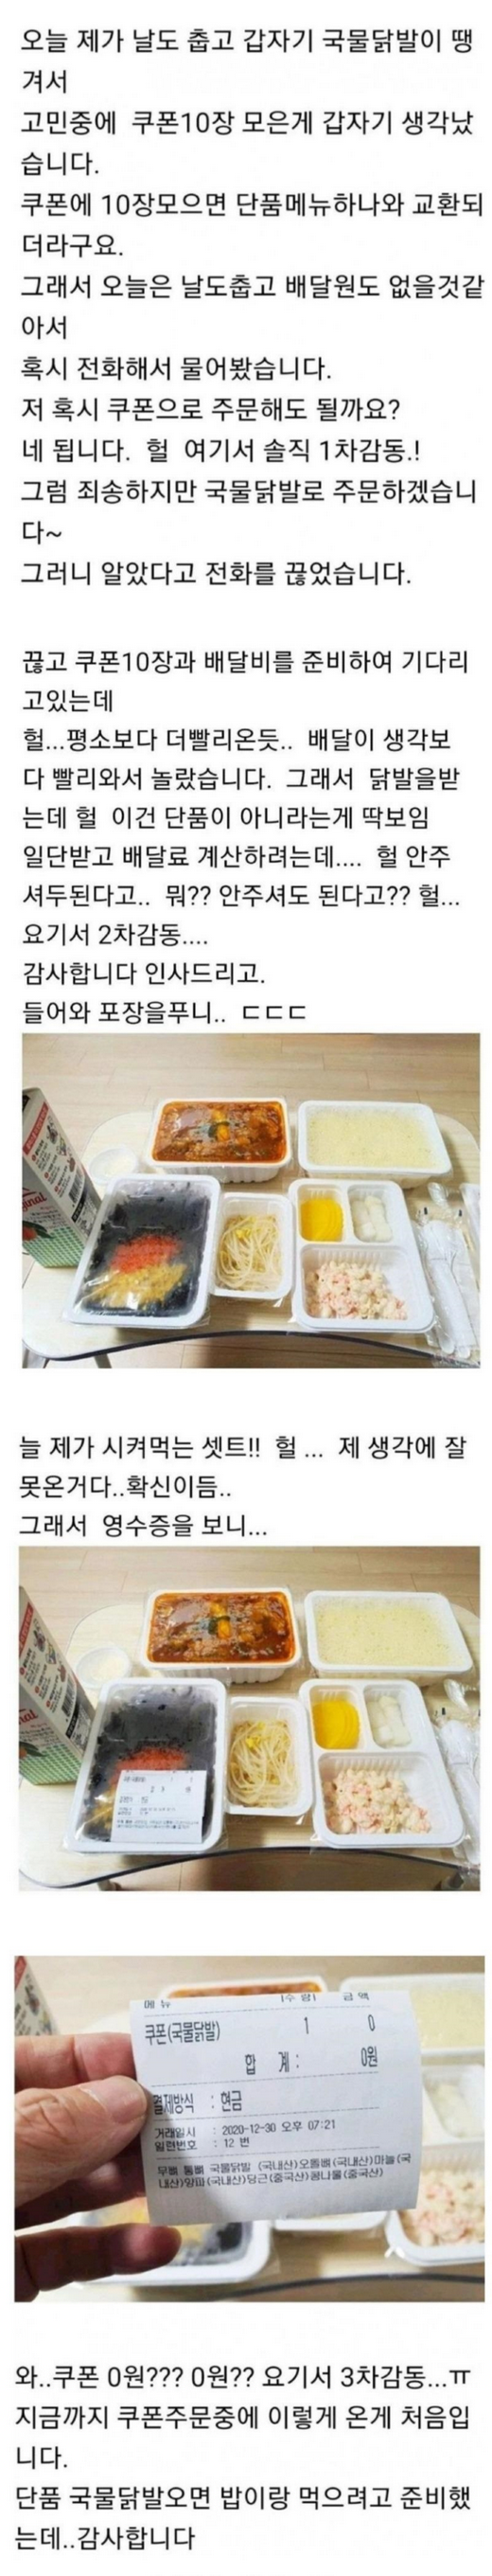 썸네일-쿠폰 10장 모아 시킨 국물닭발 수준 치킨집 리뷰.jpg-이미지